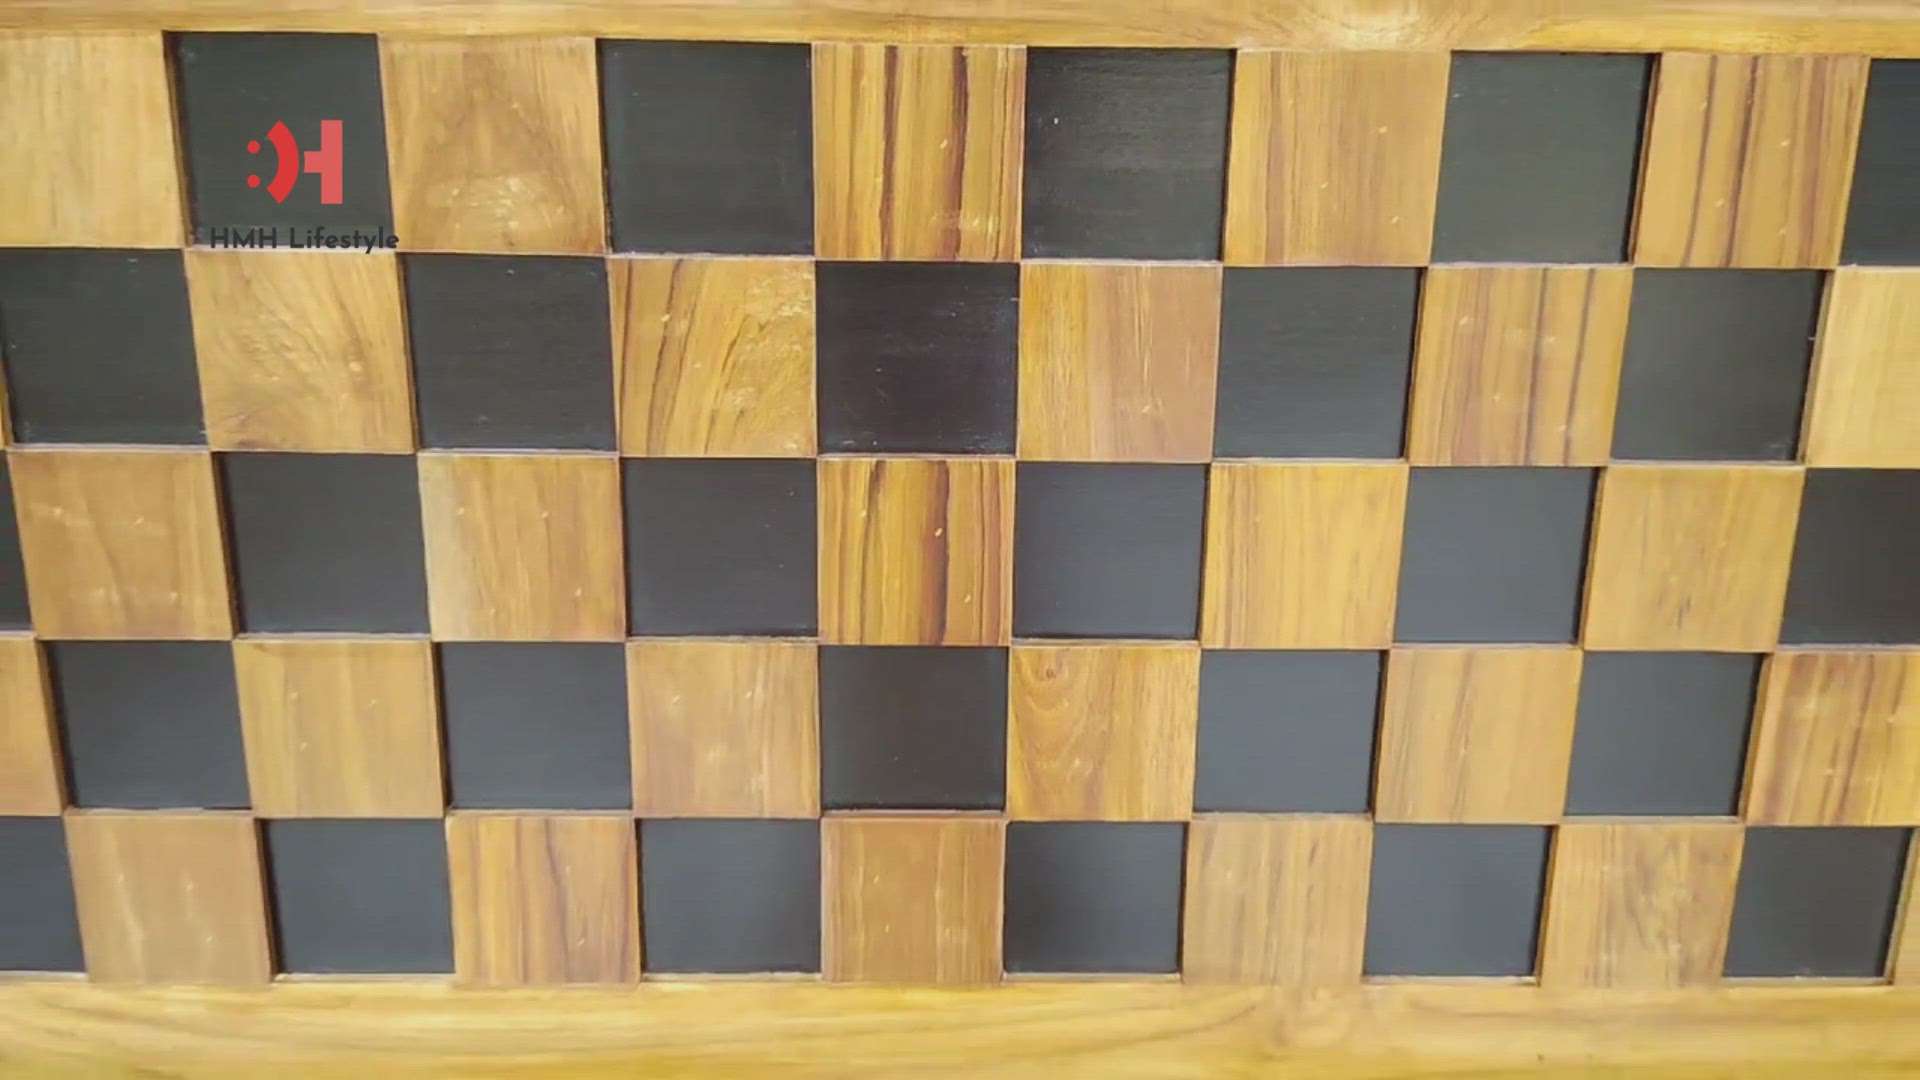 #woodencot #chess #teakwood #furnished #BedroomDecor #hmhlifestyle #ammawoods